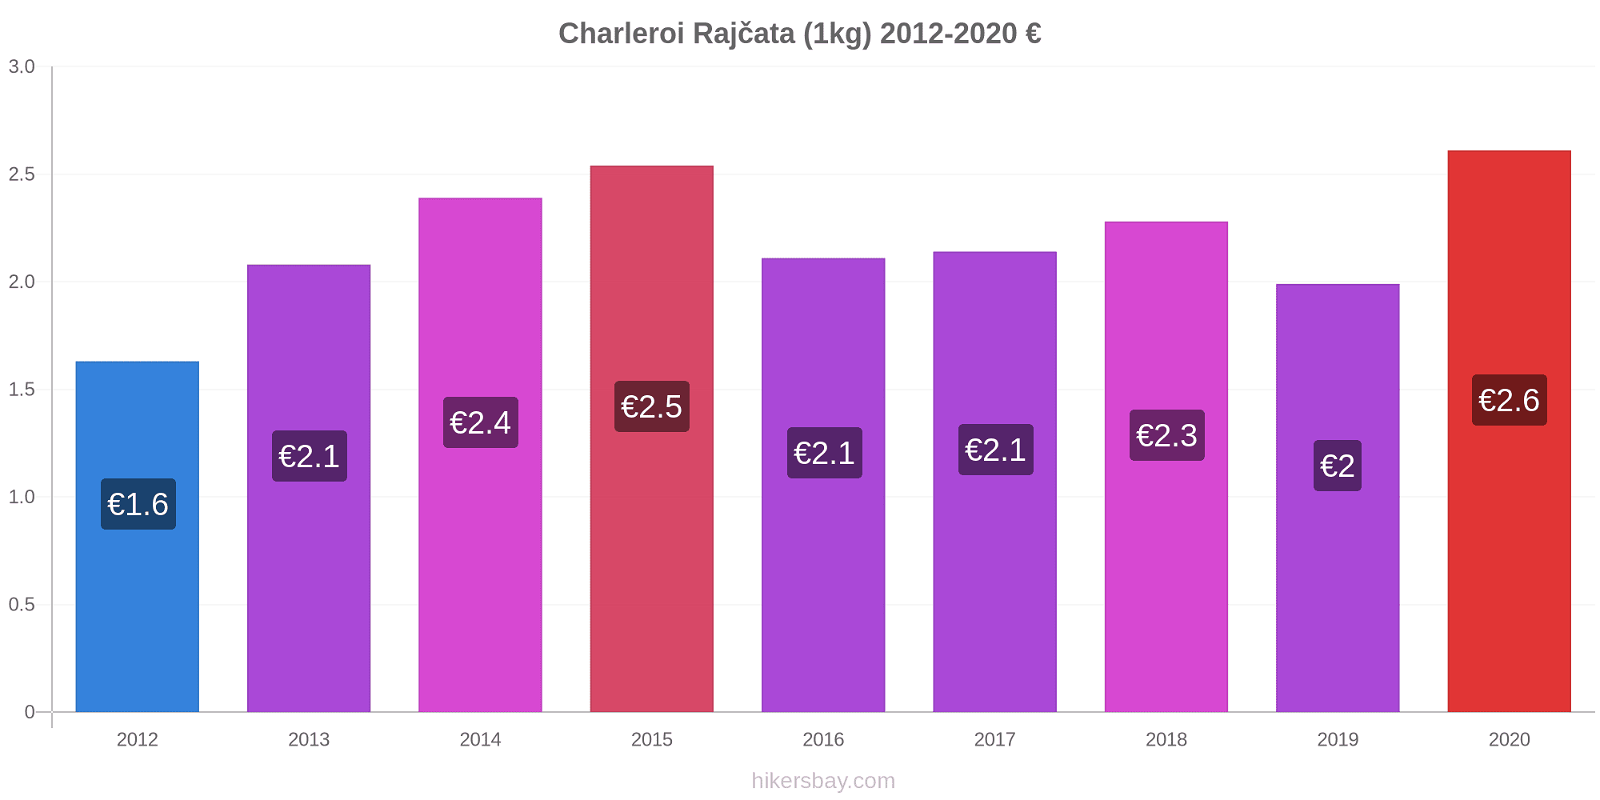 Charleroi změny cen Rajčata (1kg) hikersbay.com